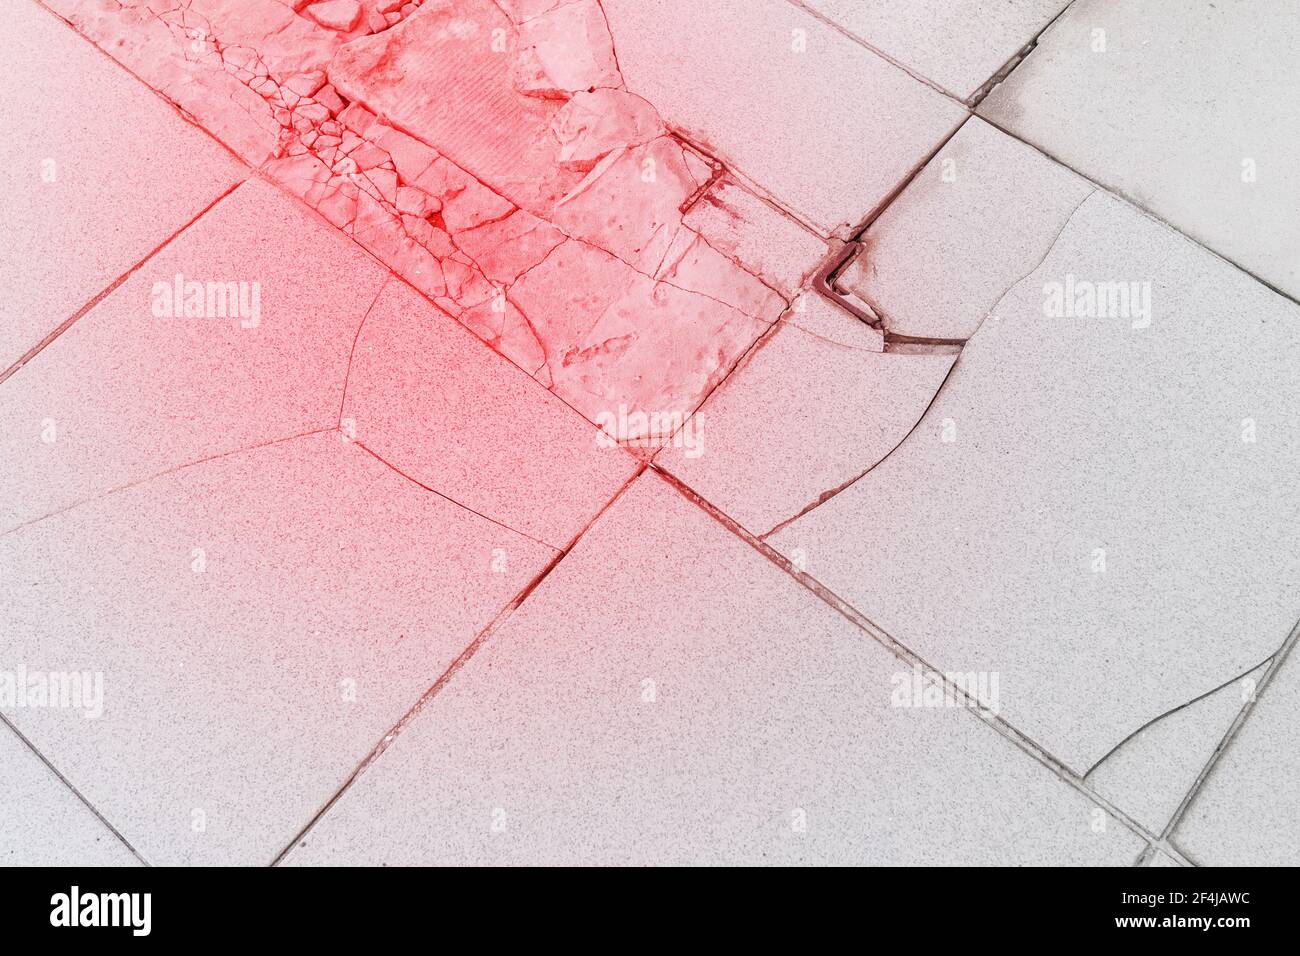 Old broken tile cracked floor repair background, renovation concept. Stock Photo